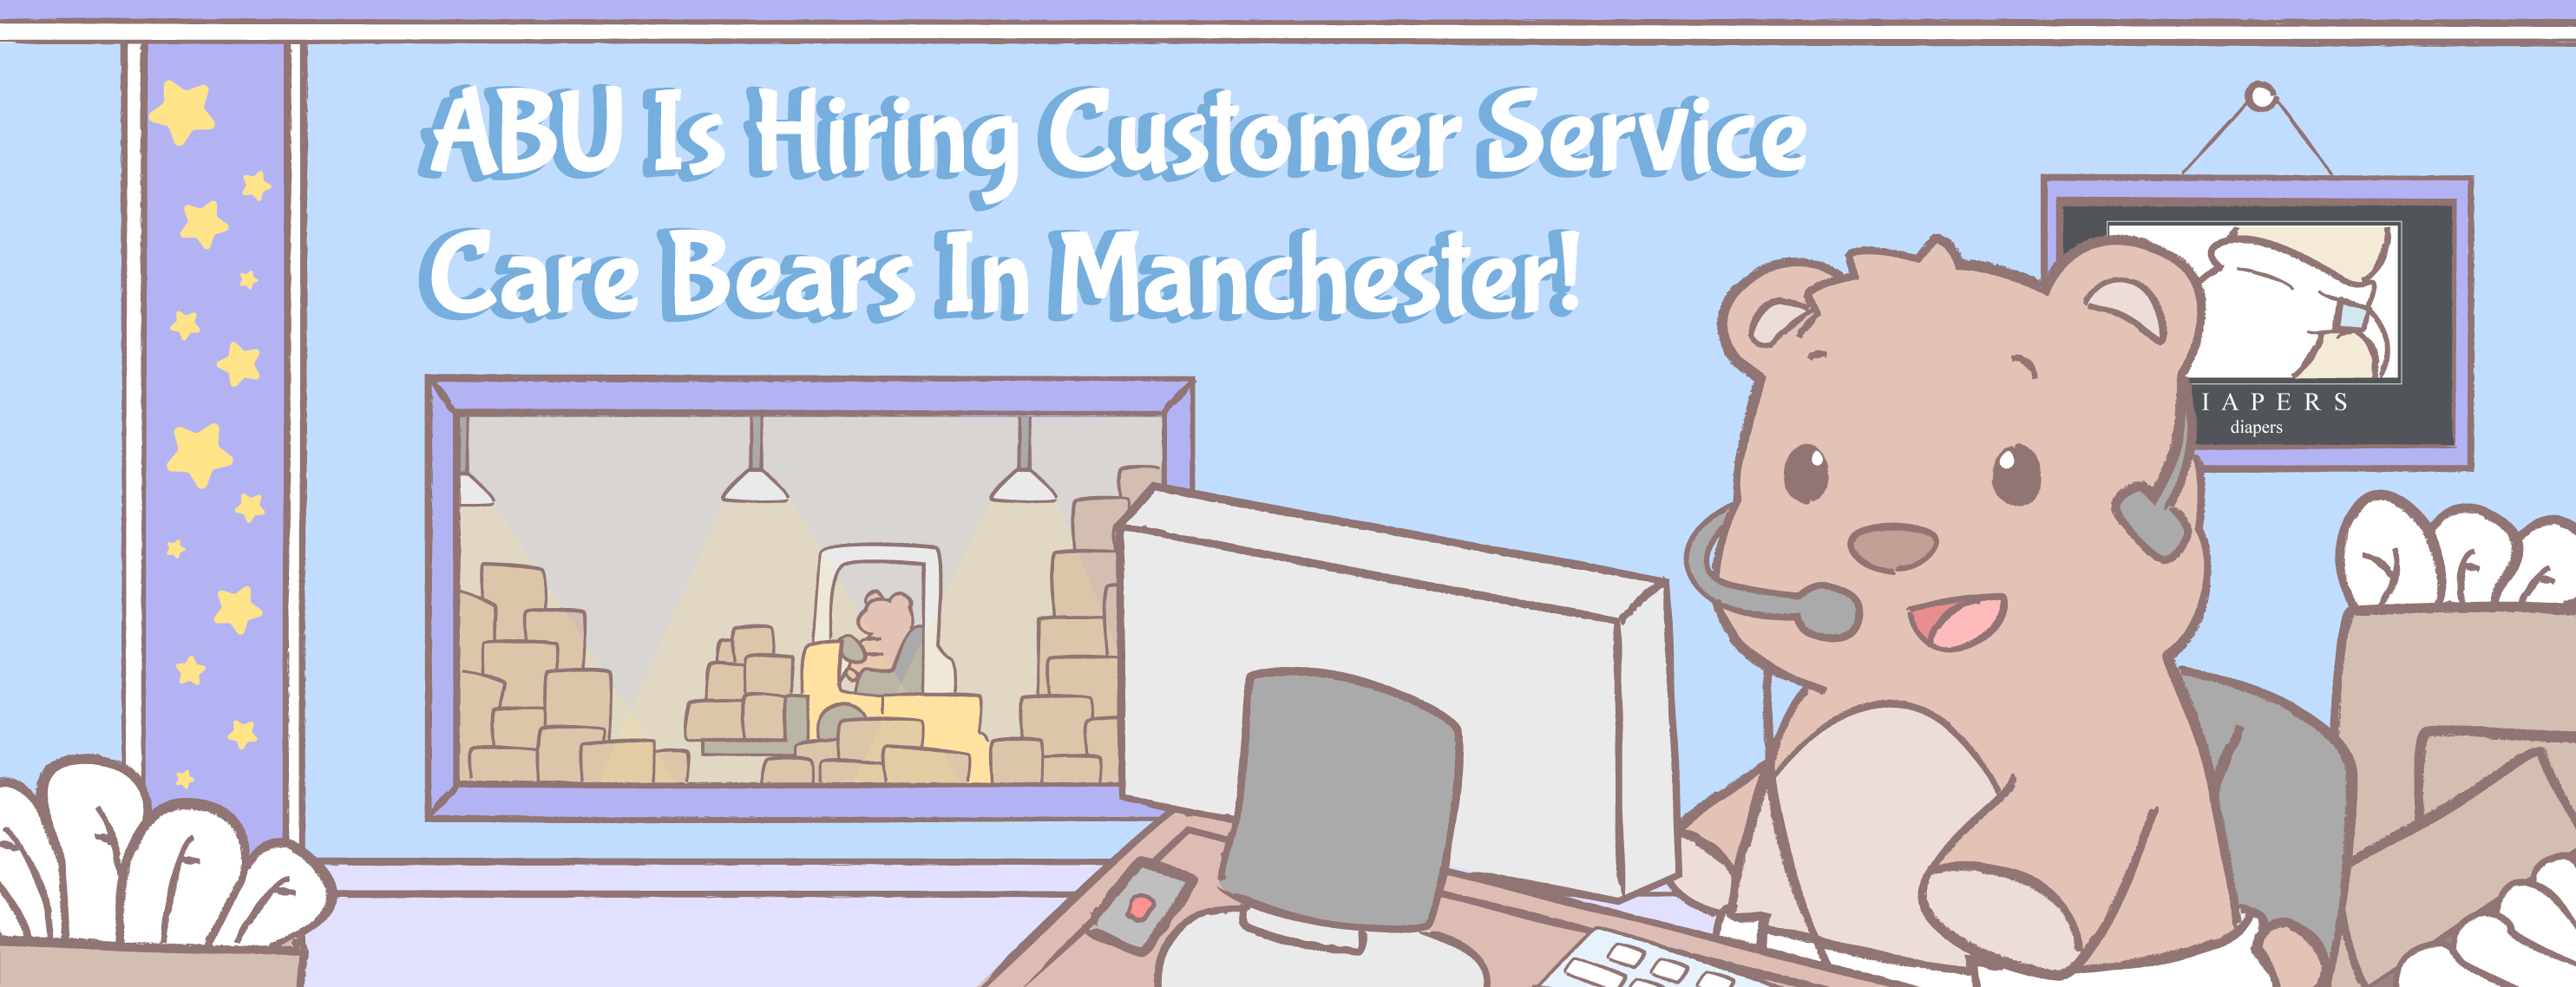 Customer_Service_Banner_UK_WEB